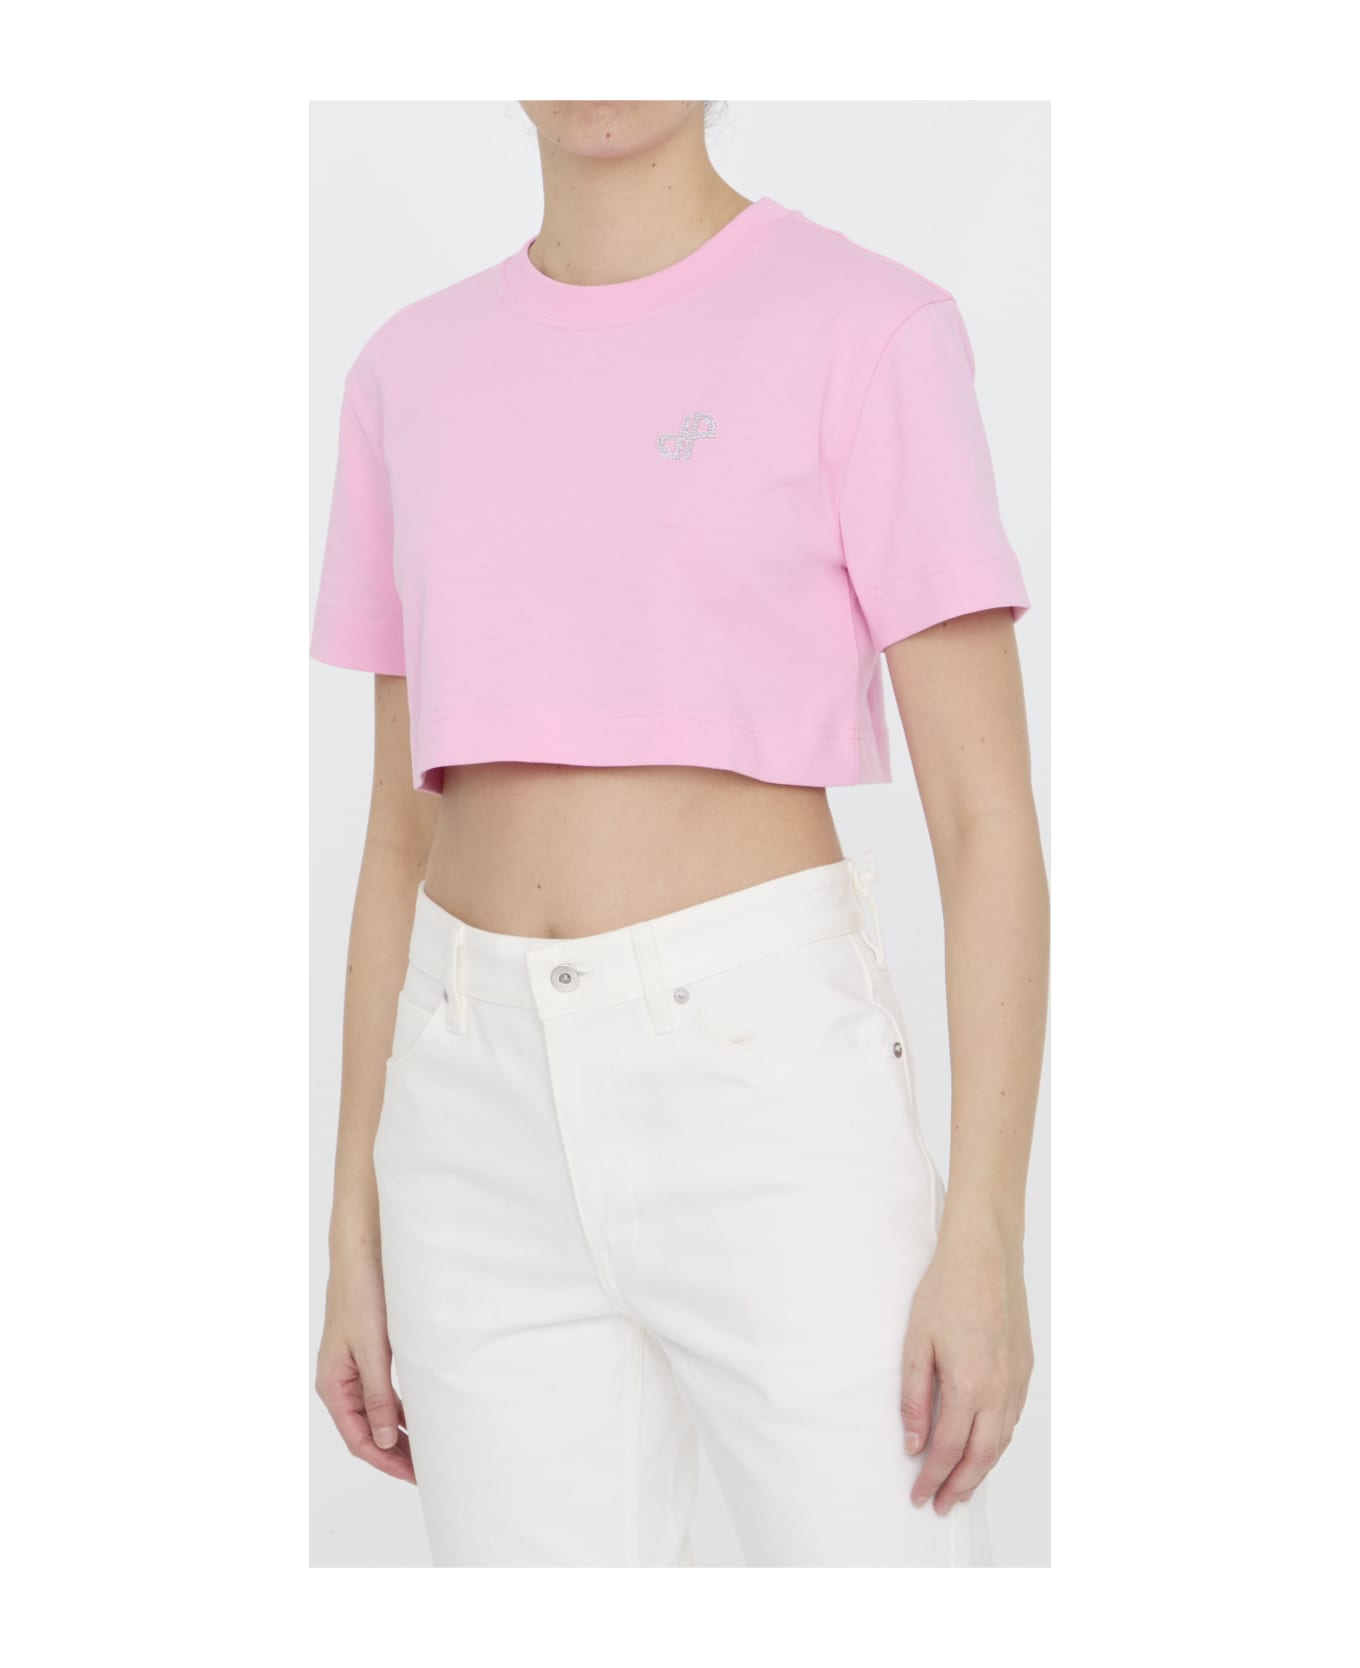 Patou Cropped T-shirt - P Pink Tシャツ